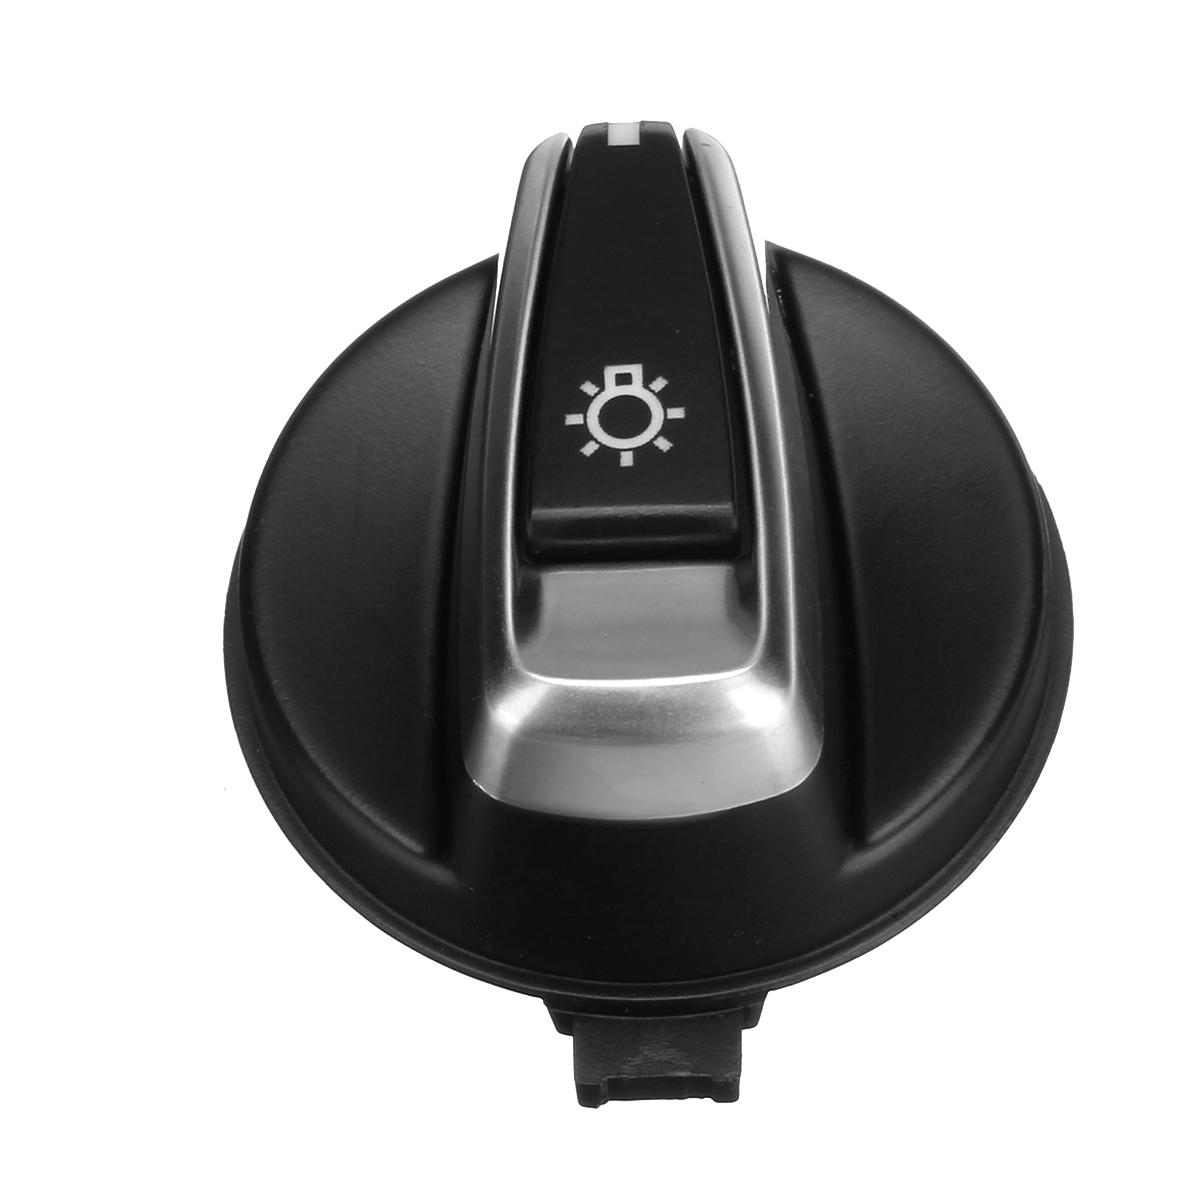 

Chrome Авто Кнопка переключателя головного света для кнопки BMW 1 E88 E82 3 E90 E91 X1 E84